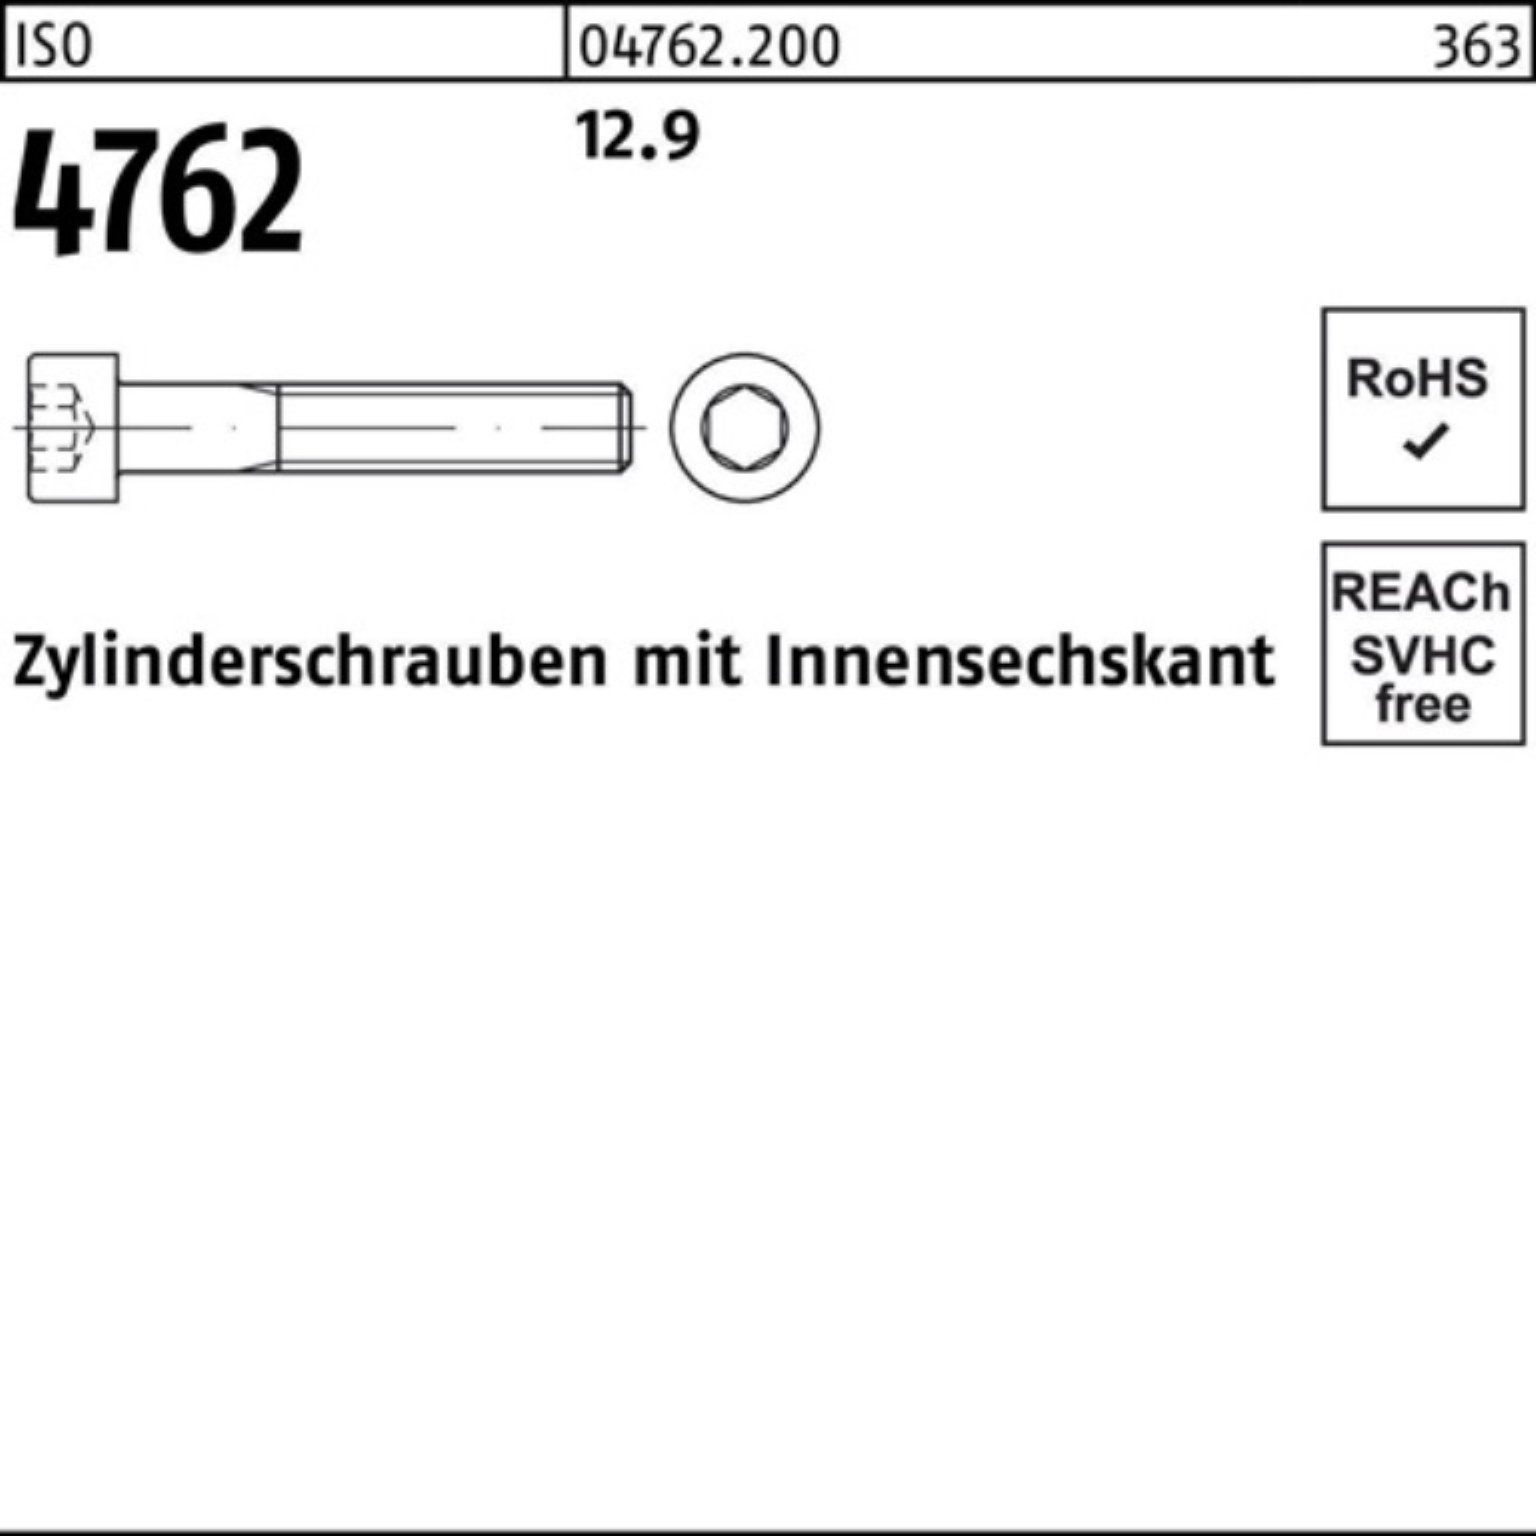 M27x Innen-6kt 1 Reyher 100er Zylinderschraube Pack 200 12.9 4762 Stück Zylinderschraube ISO